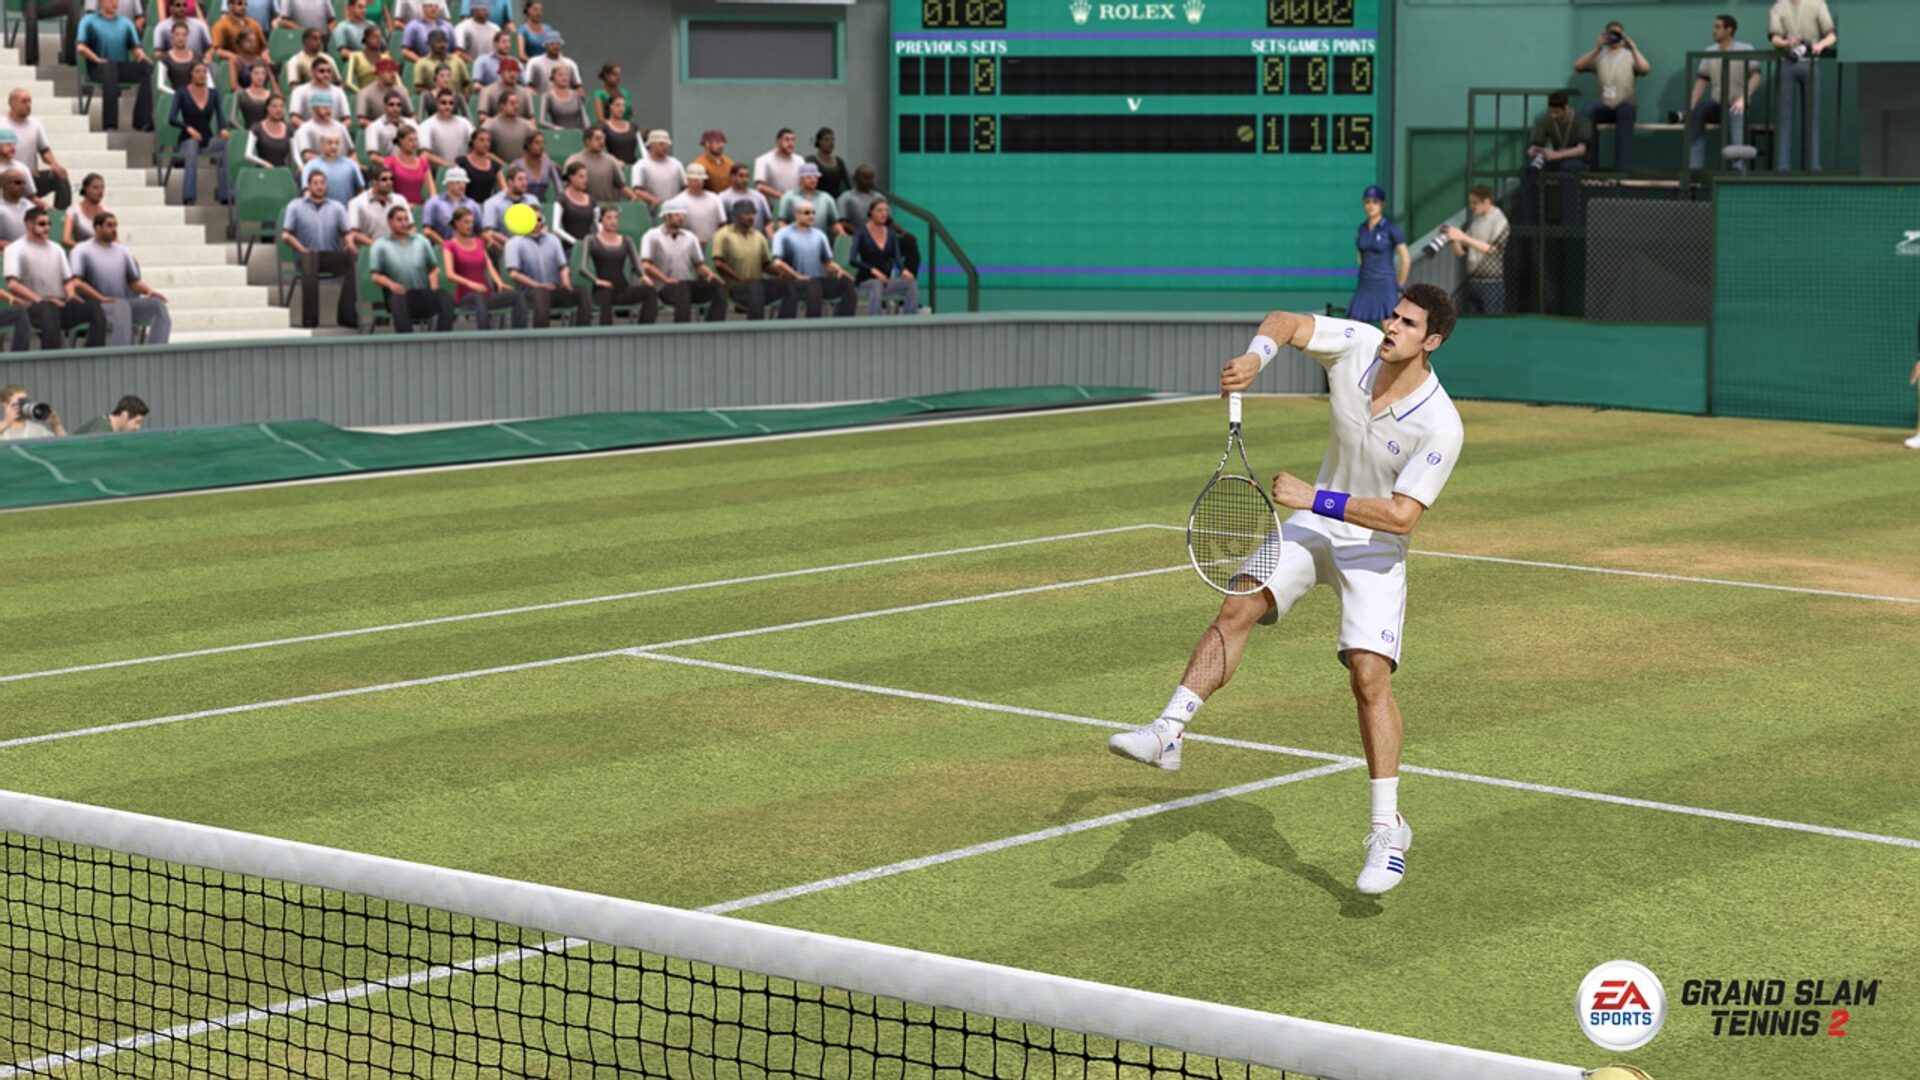 Гранд-слэм теннис. EA Sports Grand Slam Tennis. Grand Slam Tennis 2. ПС 3 теннис 2. Прямые трансляции футбол теннис